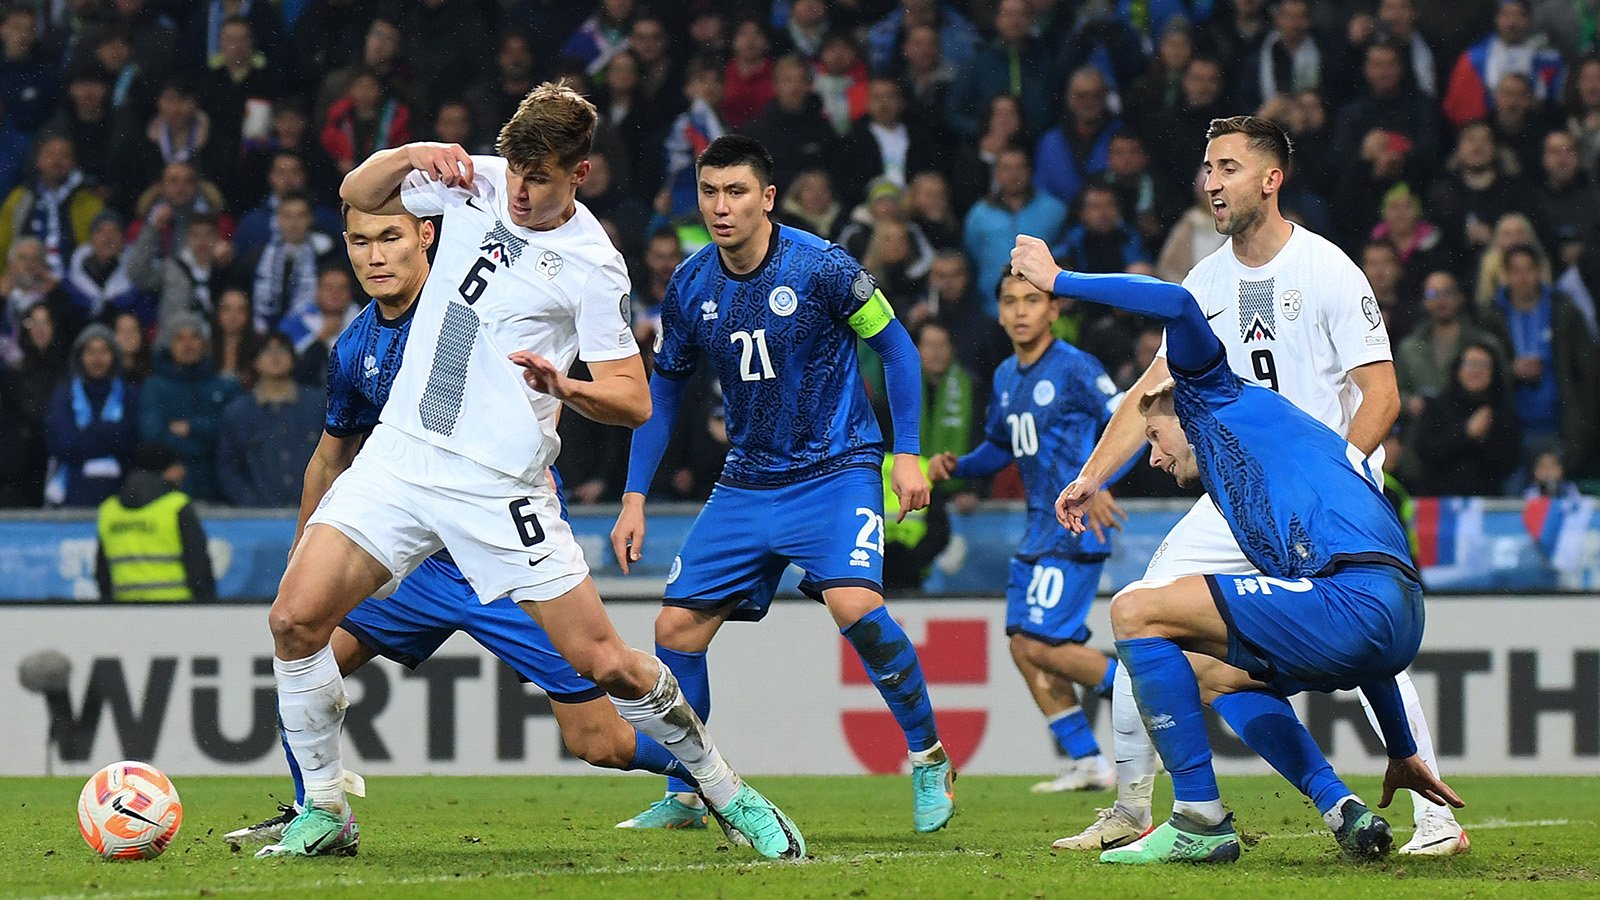 Словения впервые в истории вышла в плей-офф Евро, заняв третье место в группе с Англией, Данией и Сербией